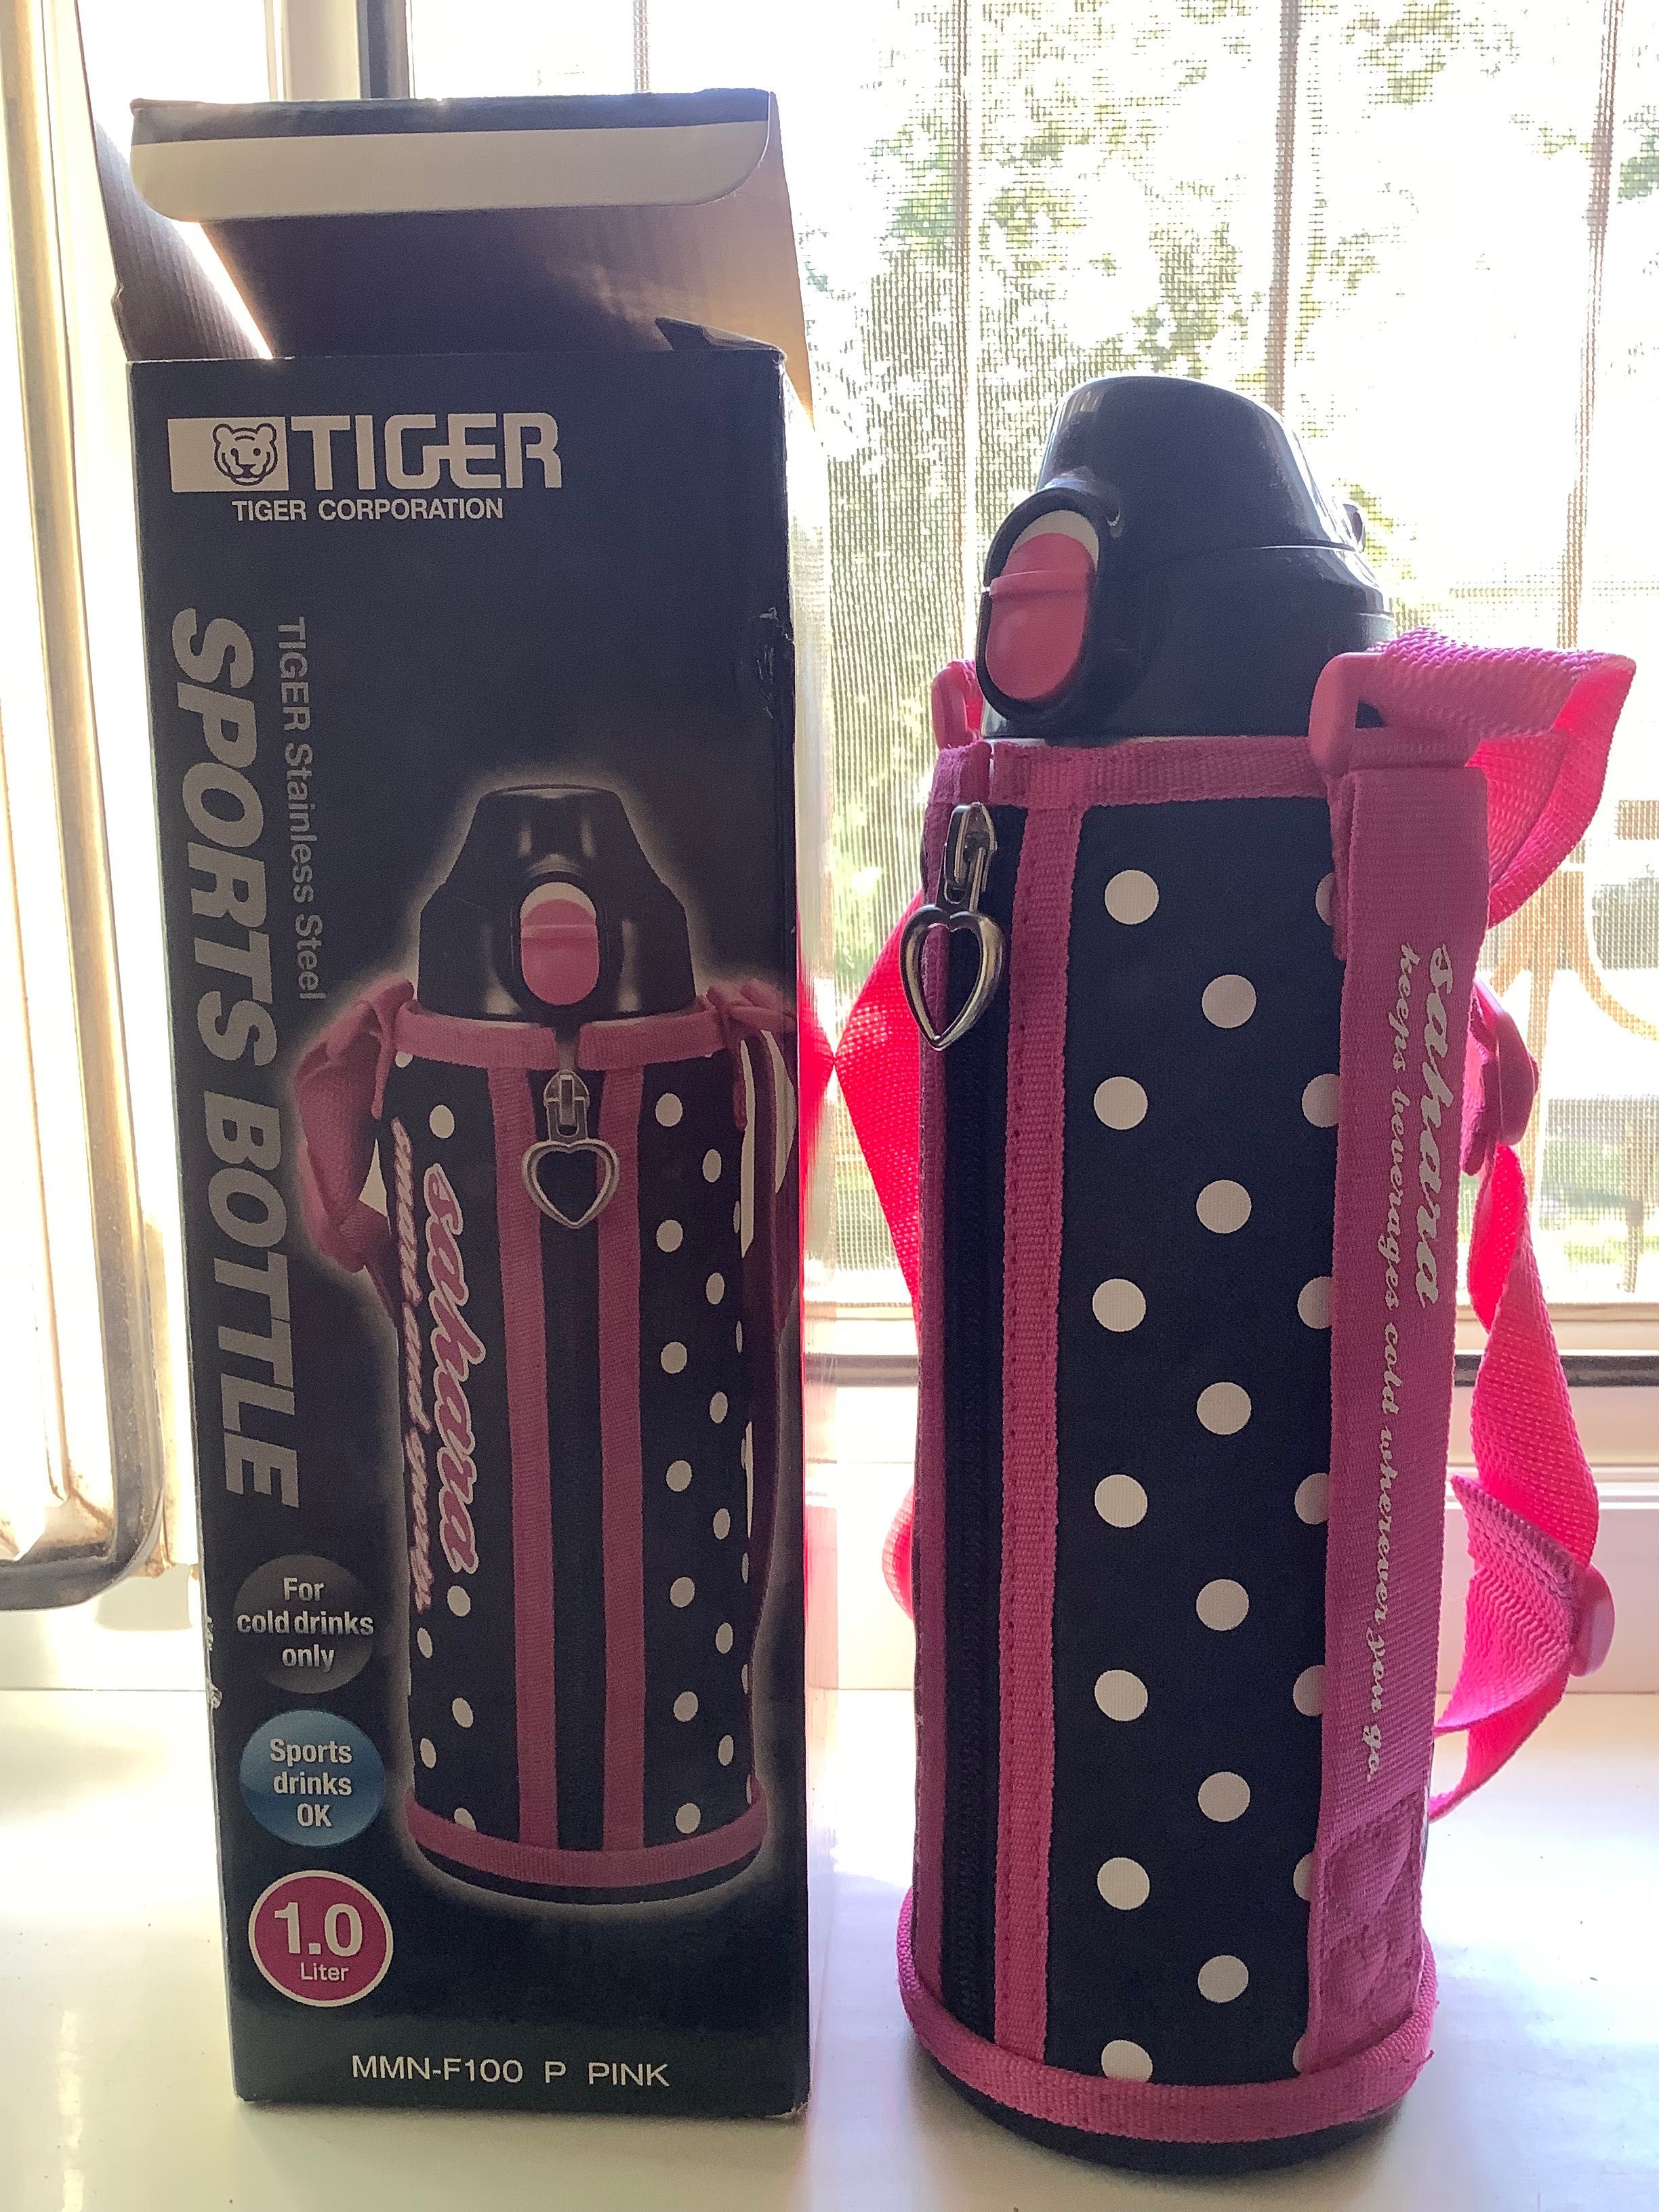 Suv ichish uchun sport butilkasi. Tiger Sport Bottle (Japan)